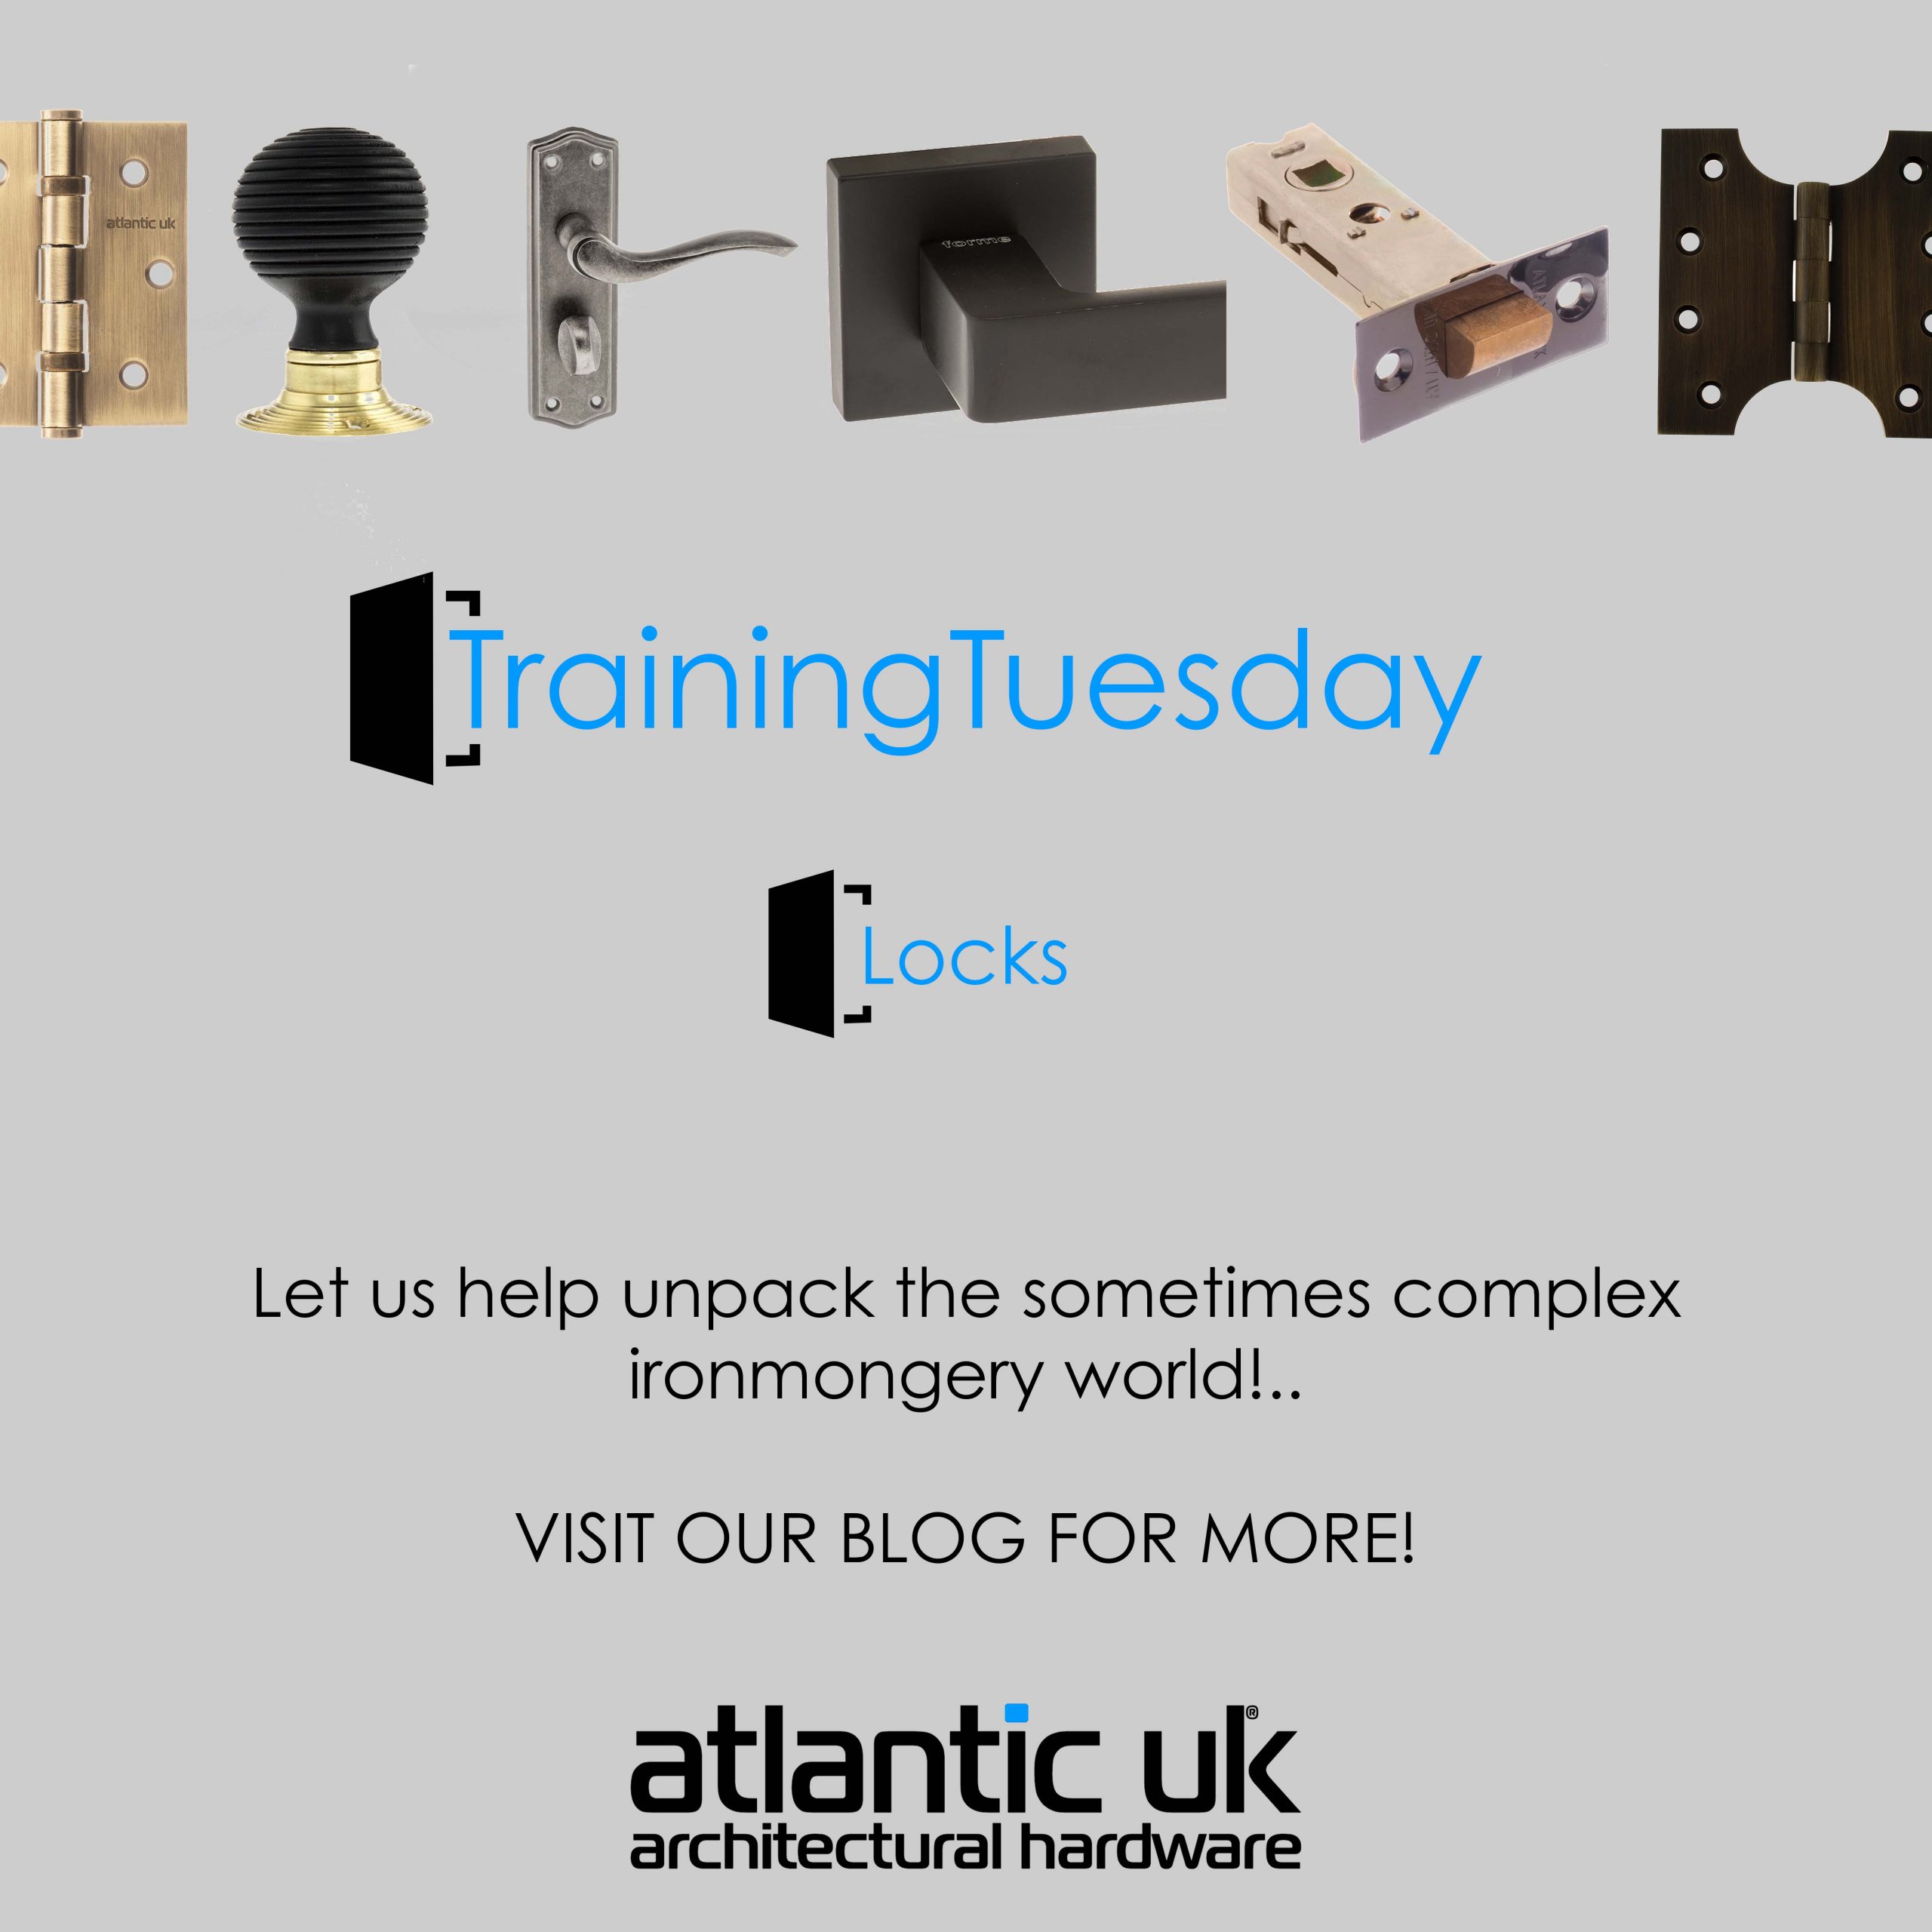 It’s #Trainingtuesday again!! Locks! image